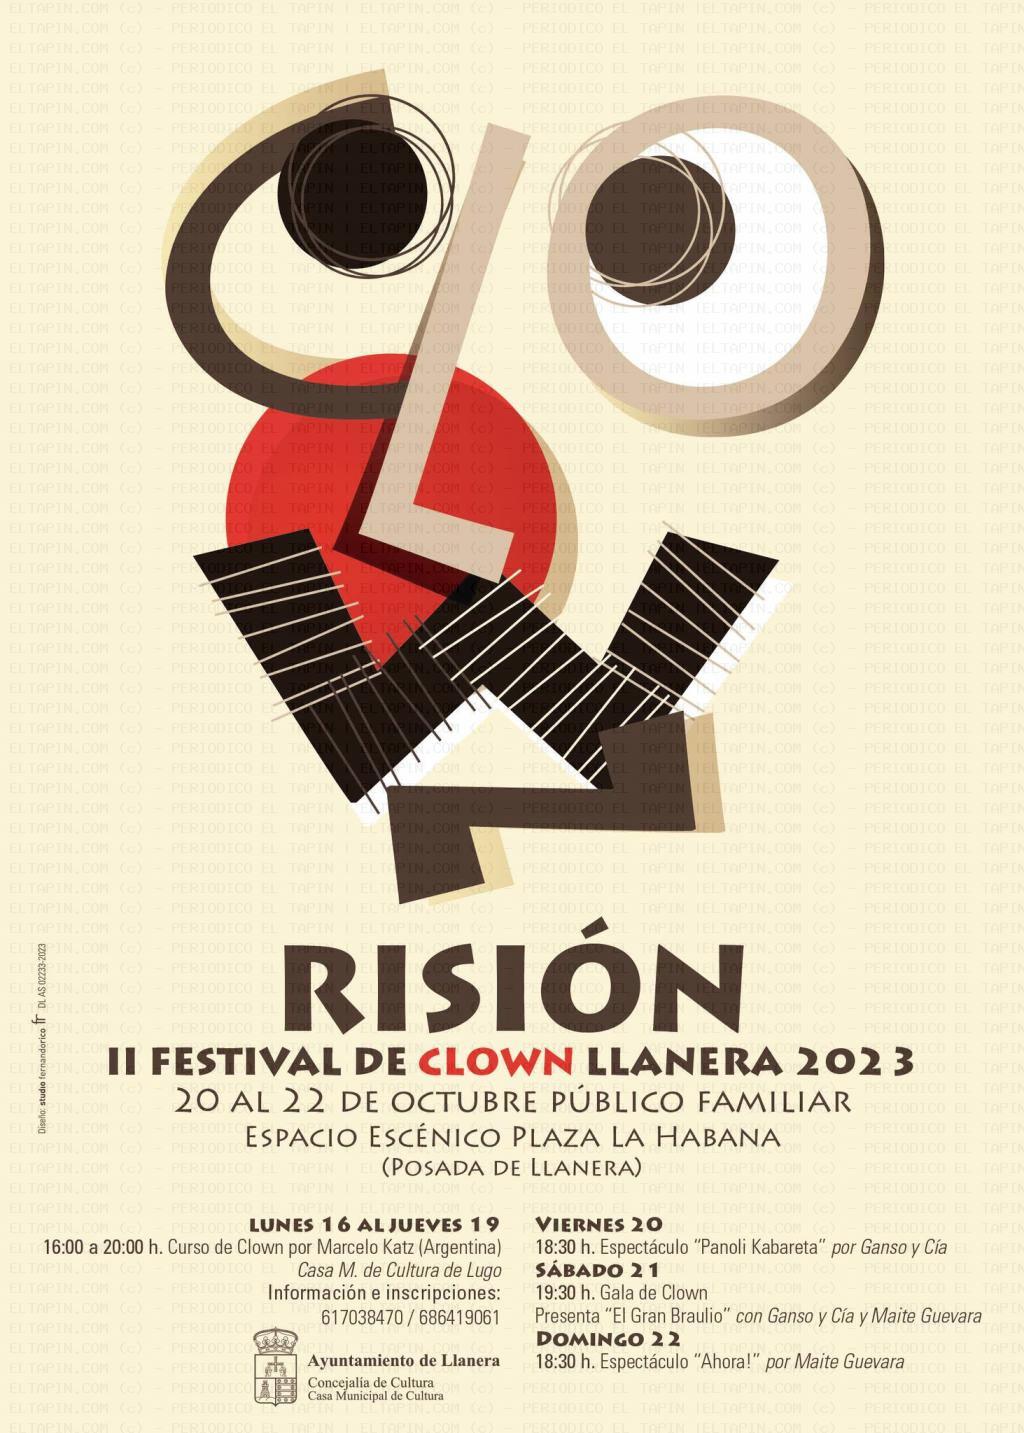 El Tapin - Llanera organiza el II Festival de Clown de Llanera: "RISIÓN"